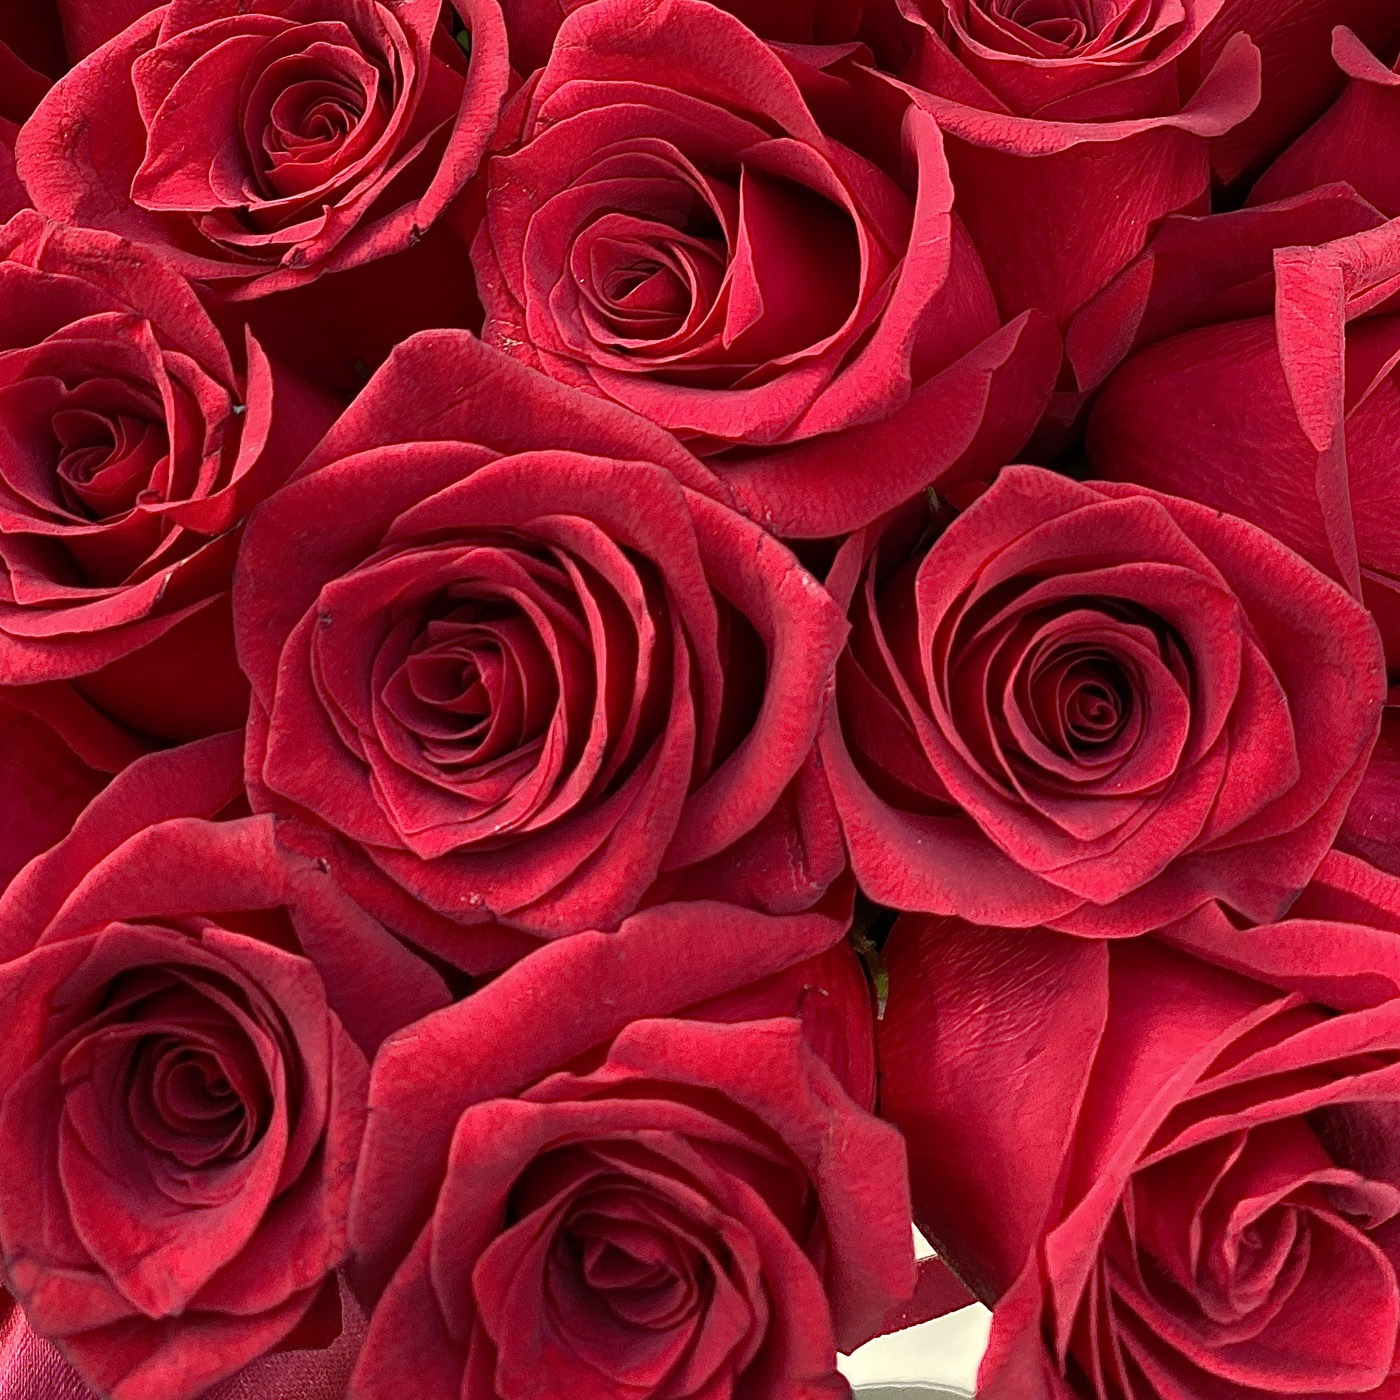 Красные розы в шляпной коробке L